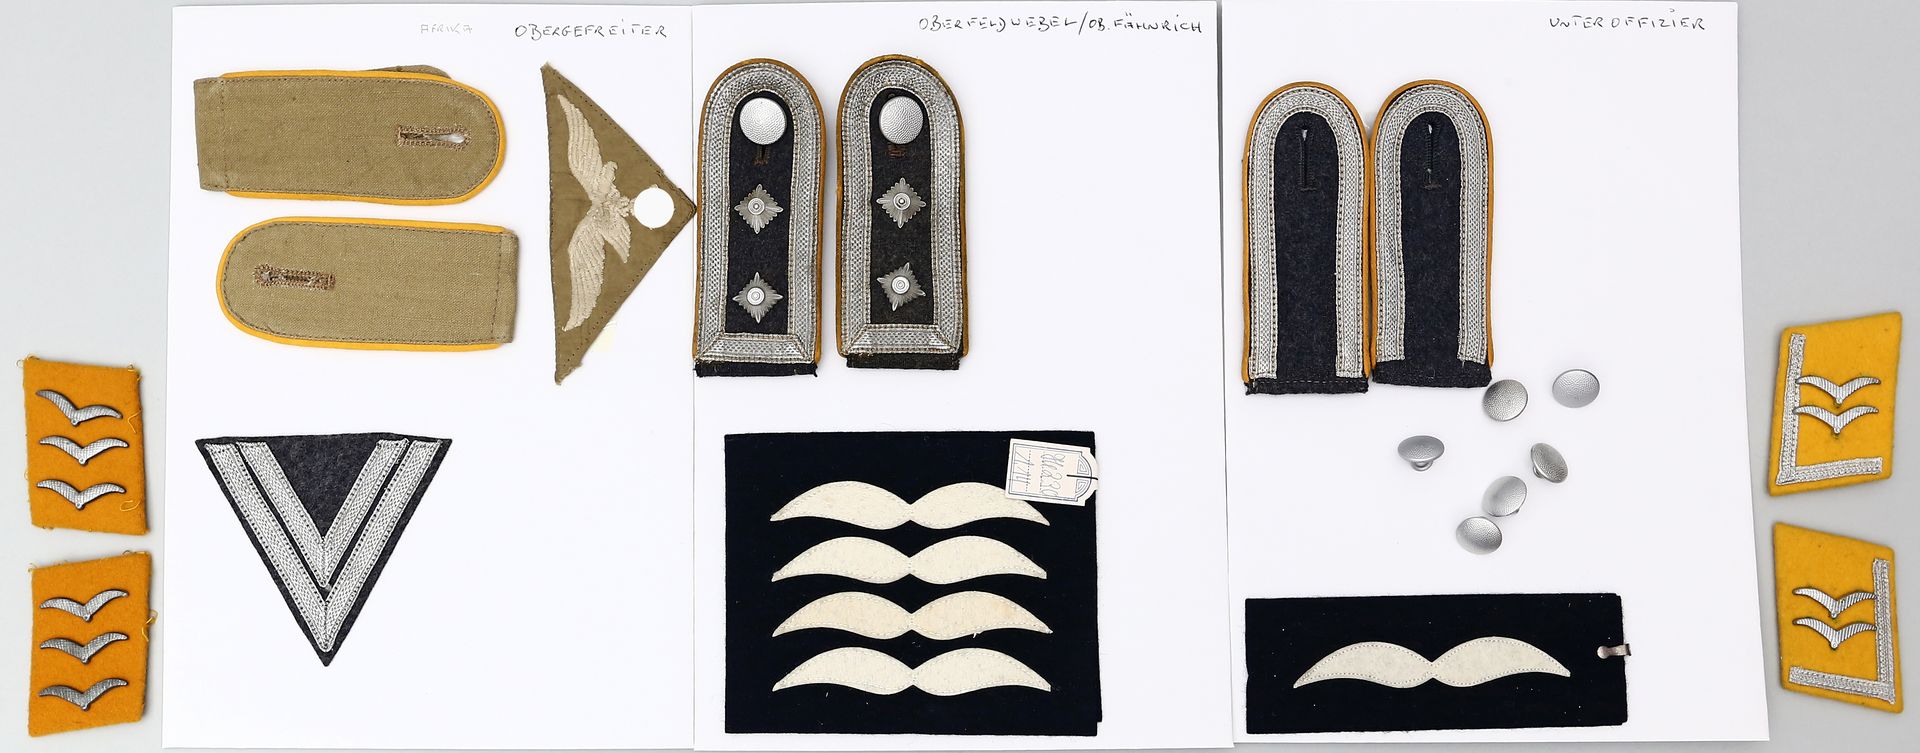 Außergewöhnliche Sammlung Effekten, Luftwaffe WK 2. - Image 3 of 3